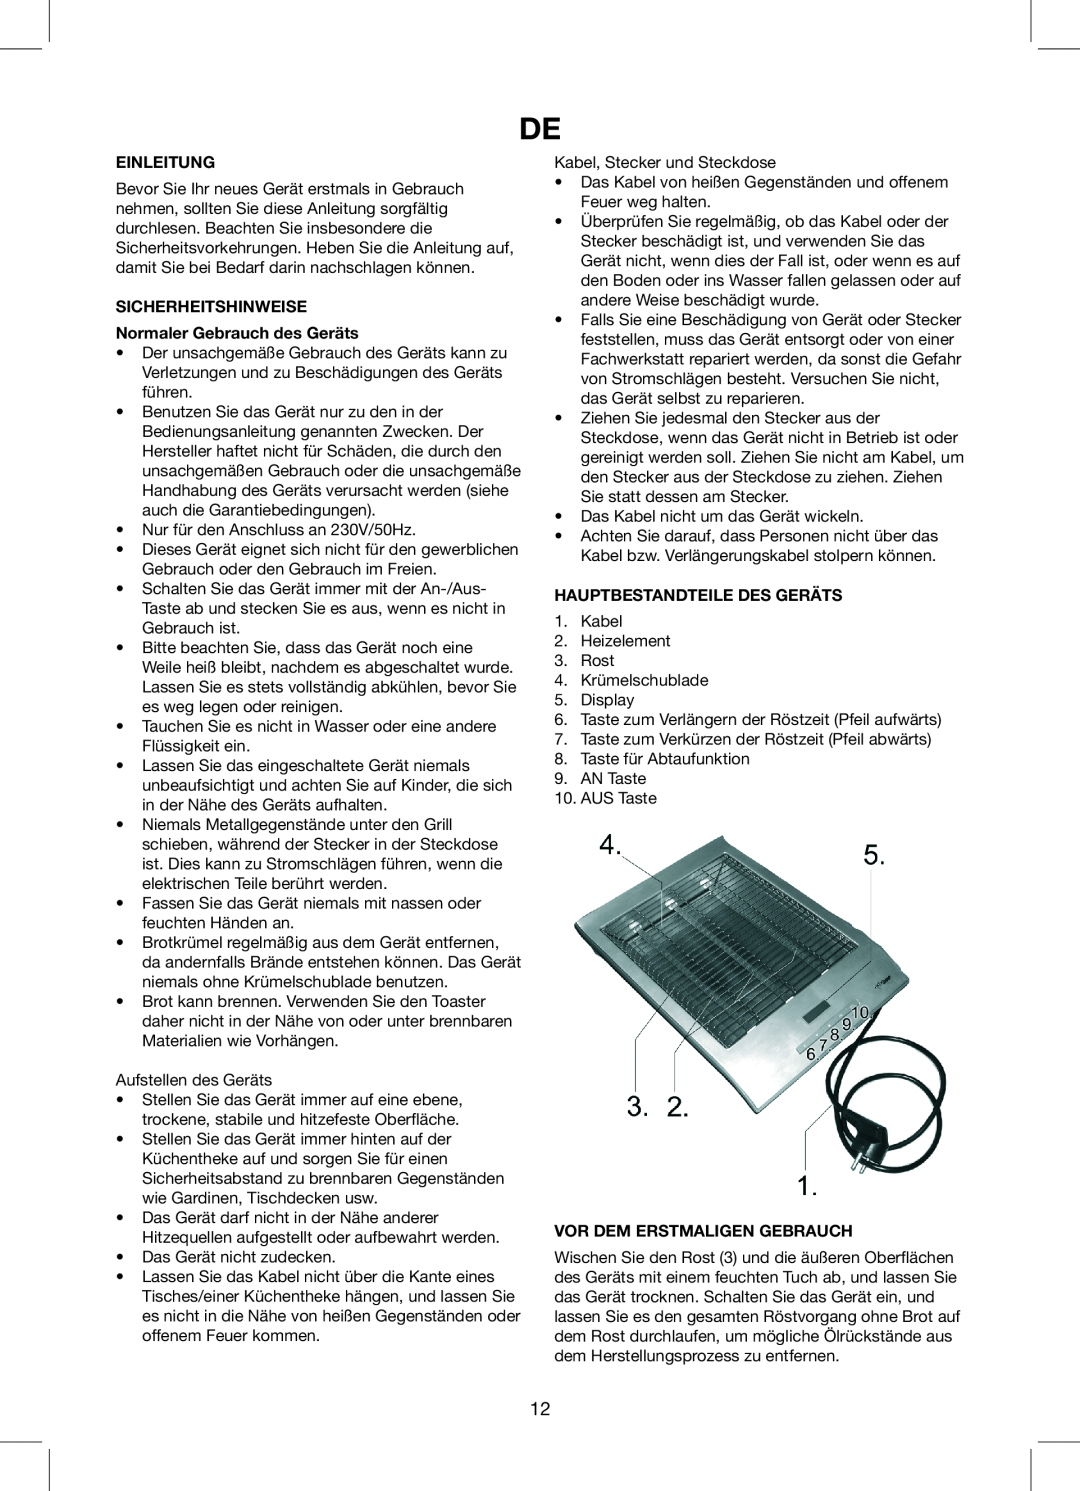 Exido Toaster manual Einleitung, SICHERHEITSHINWEISE Normaler Gebrauch des Geräts, Hauptbestandteile Des Geräts 